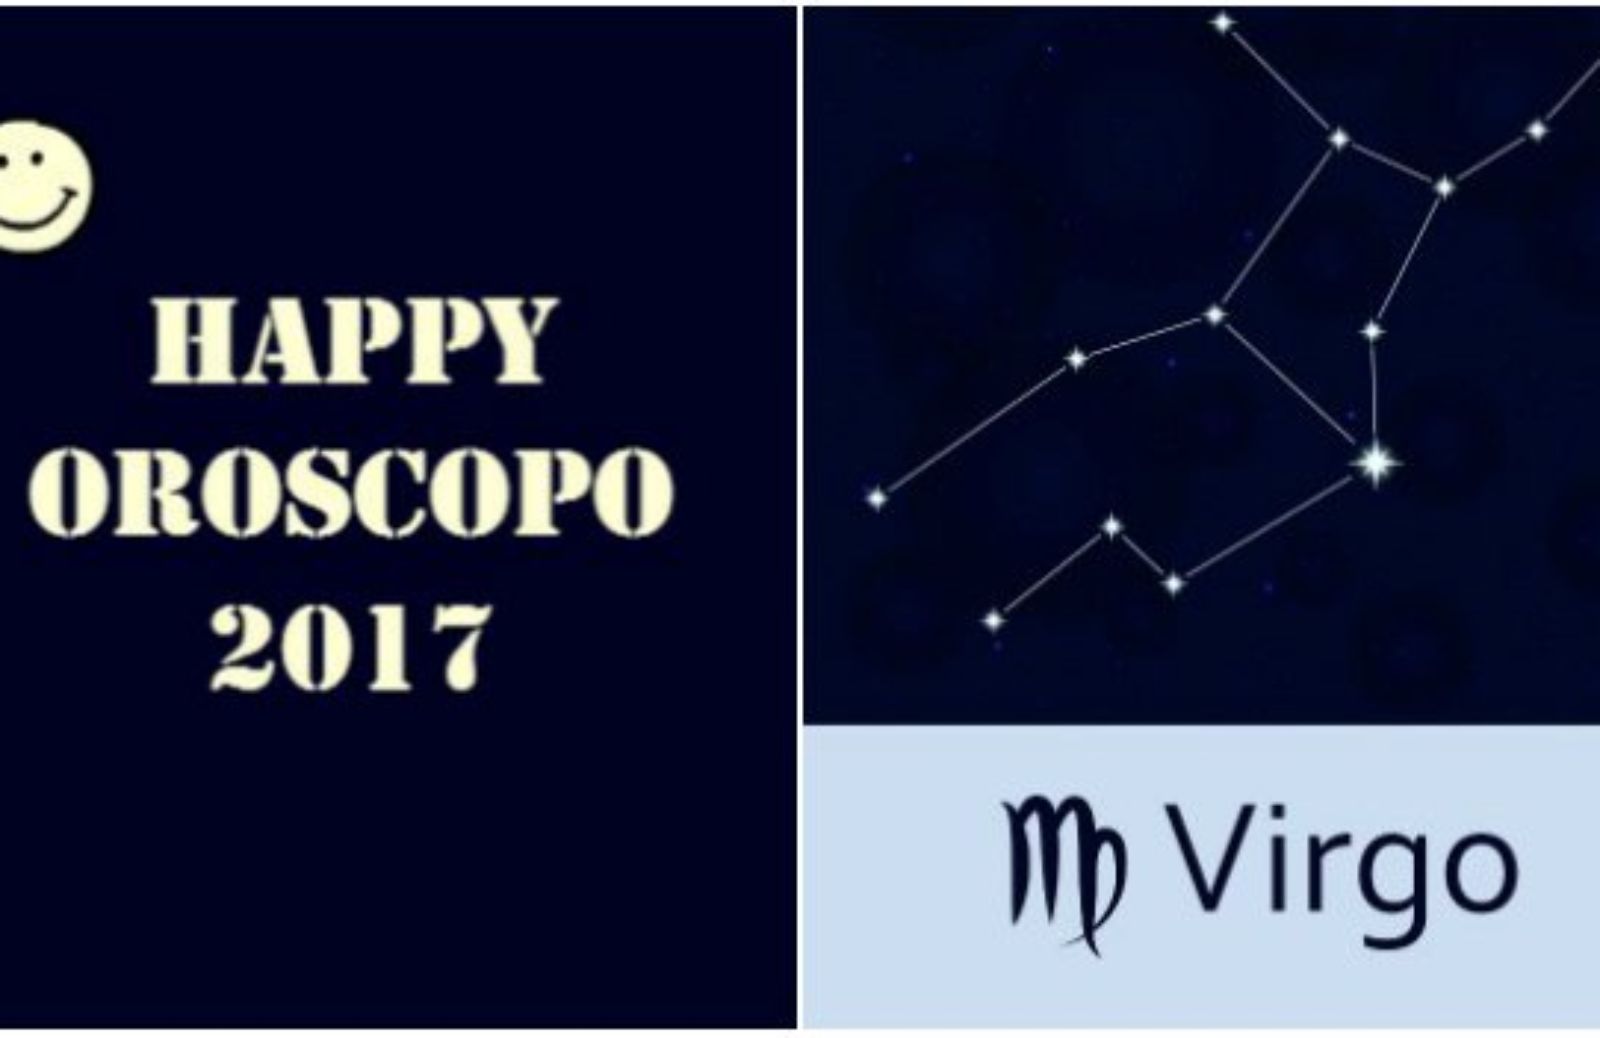 Happy Oroscopo 2017: il segno della Vergine